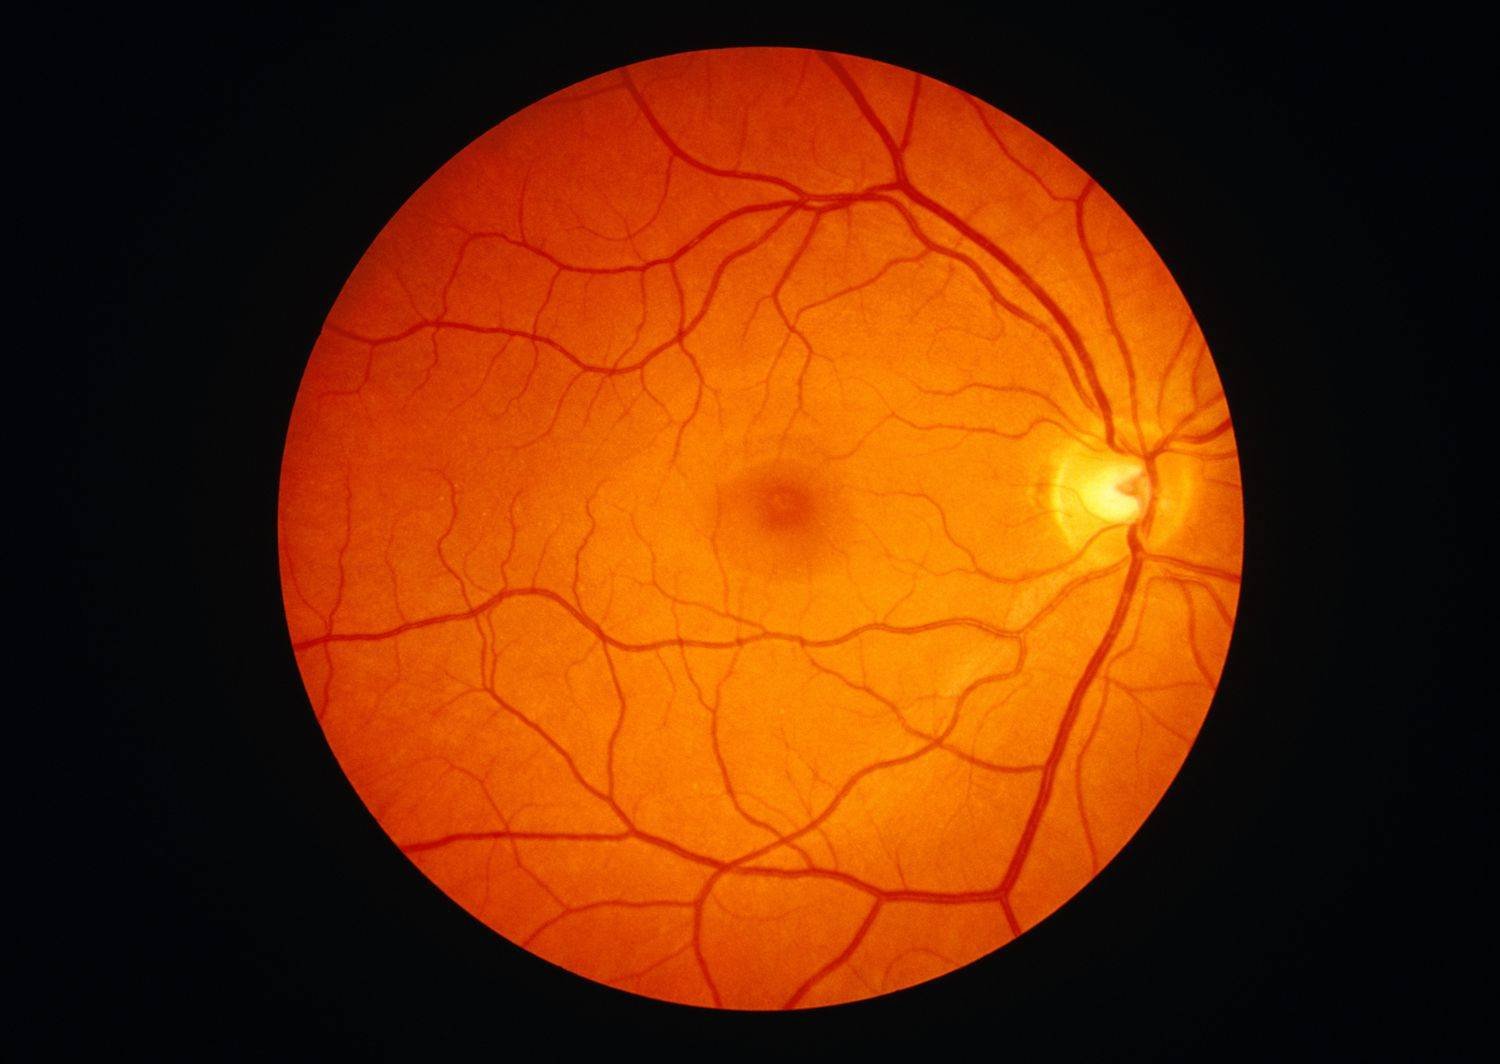 باحثون: كوفيد يخترق شبكية العين وعواقبه المحتملة خطيرة وطويلة